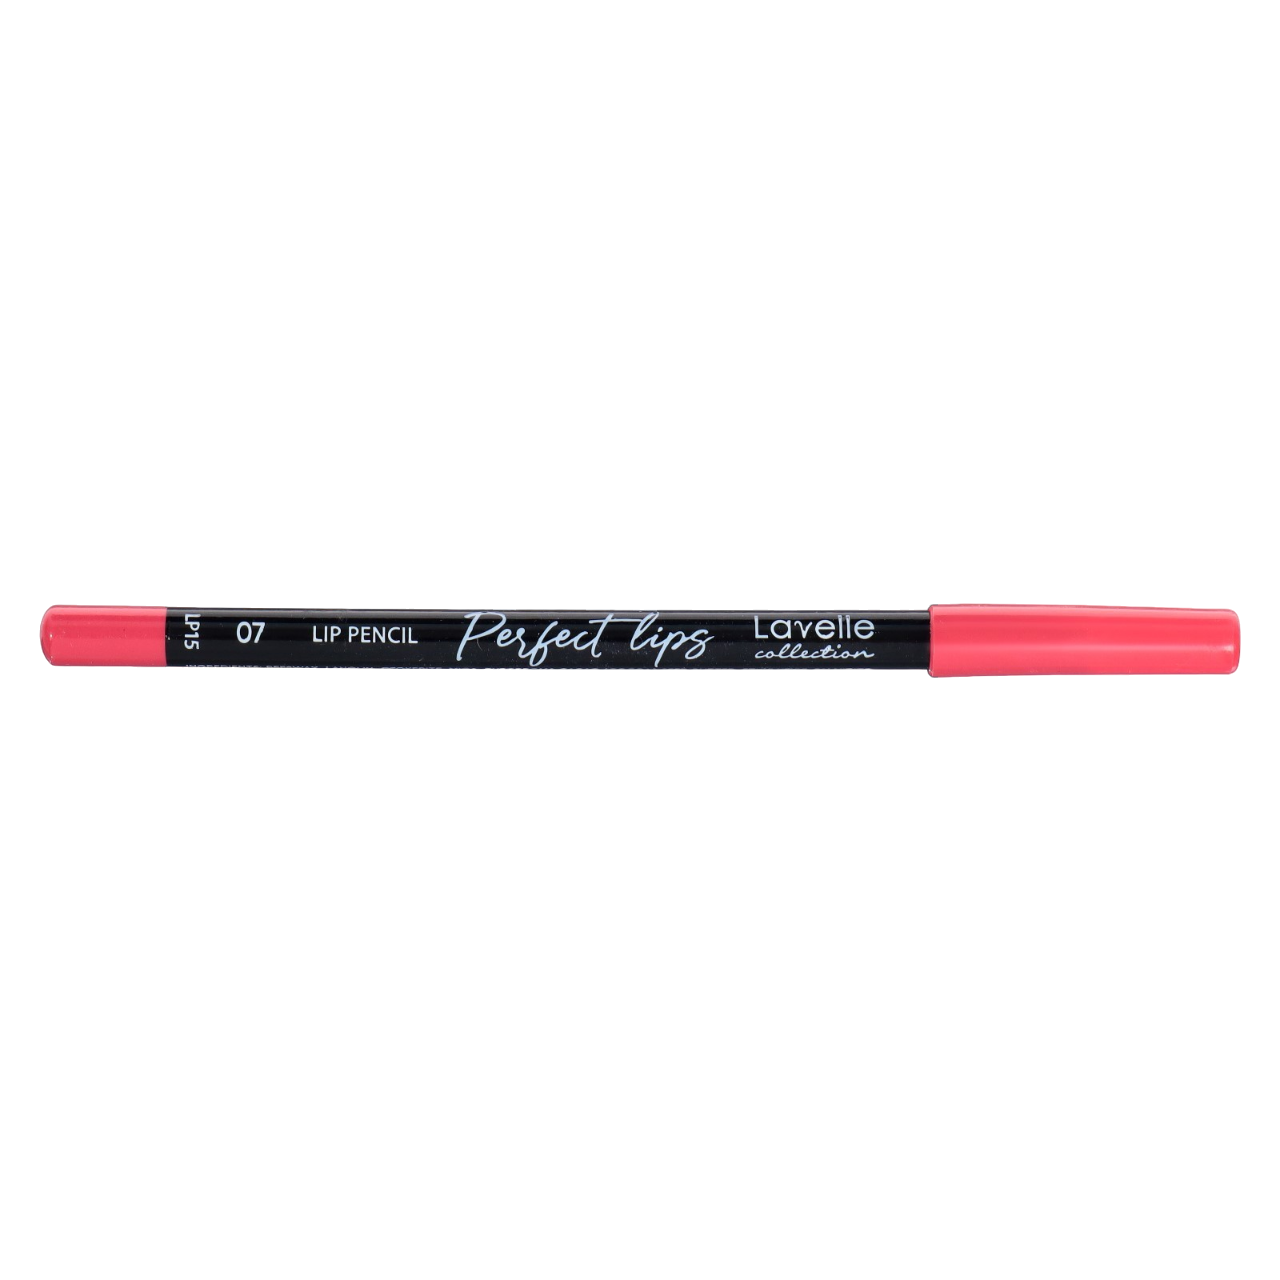 карандаш для губ классический красный lip pencil definer classic red Карандаш для губ косметический LavelleCollection LP15 тон 07 классический красный, 5 г